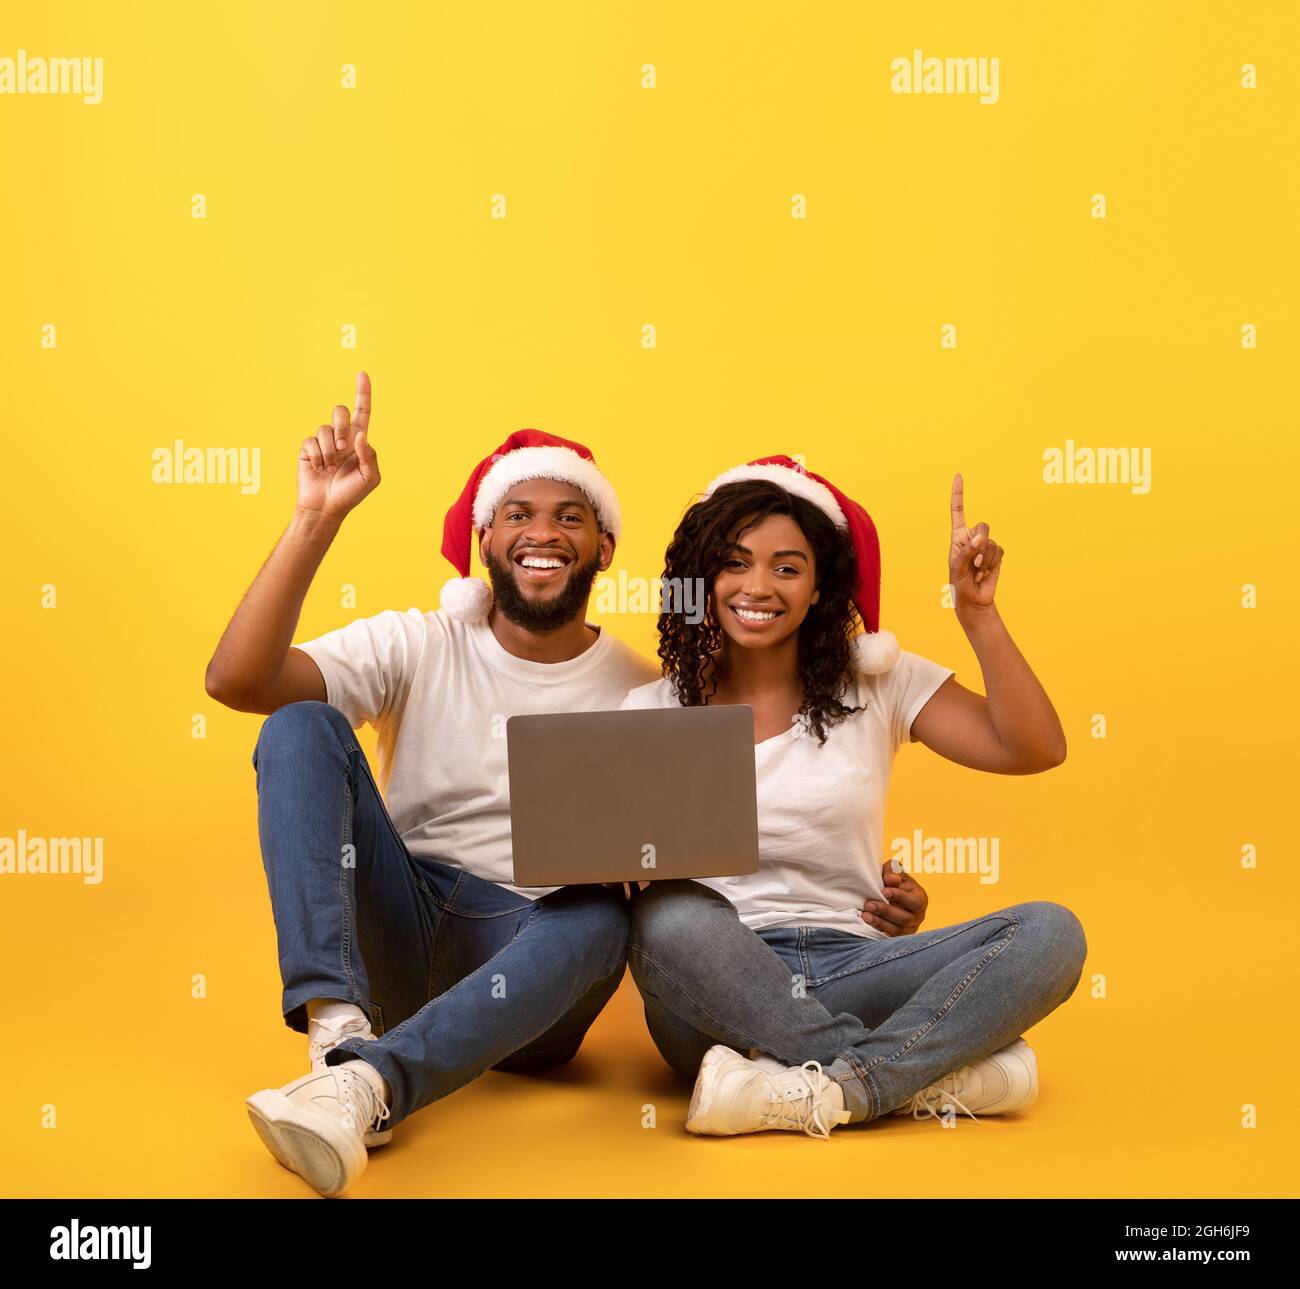 Offre de Noël. Heureux couple afro-américain assis avec un ordinateur portable et pointant vers l'espace libre, fond jaune Banque D'Images